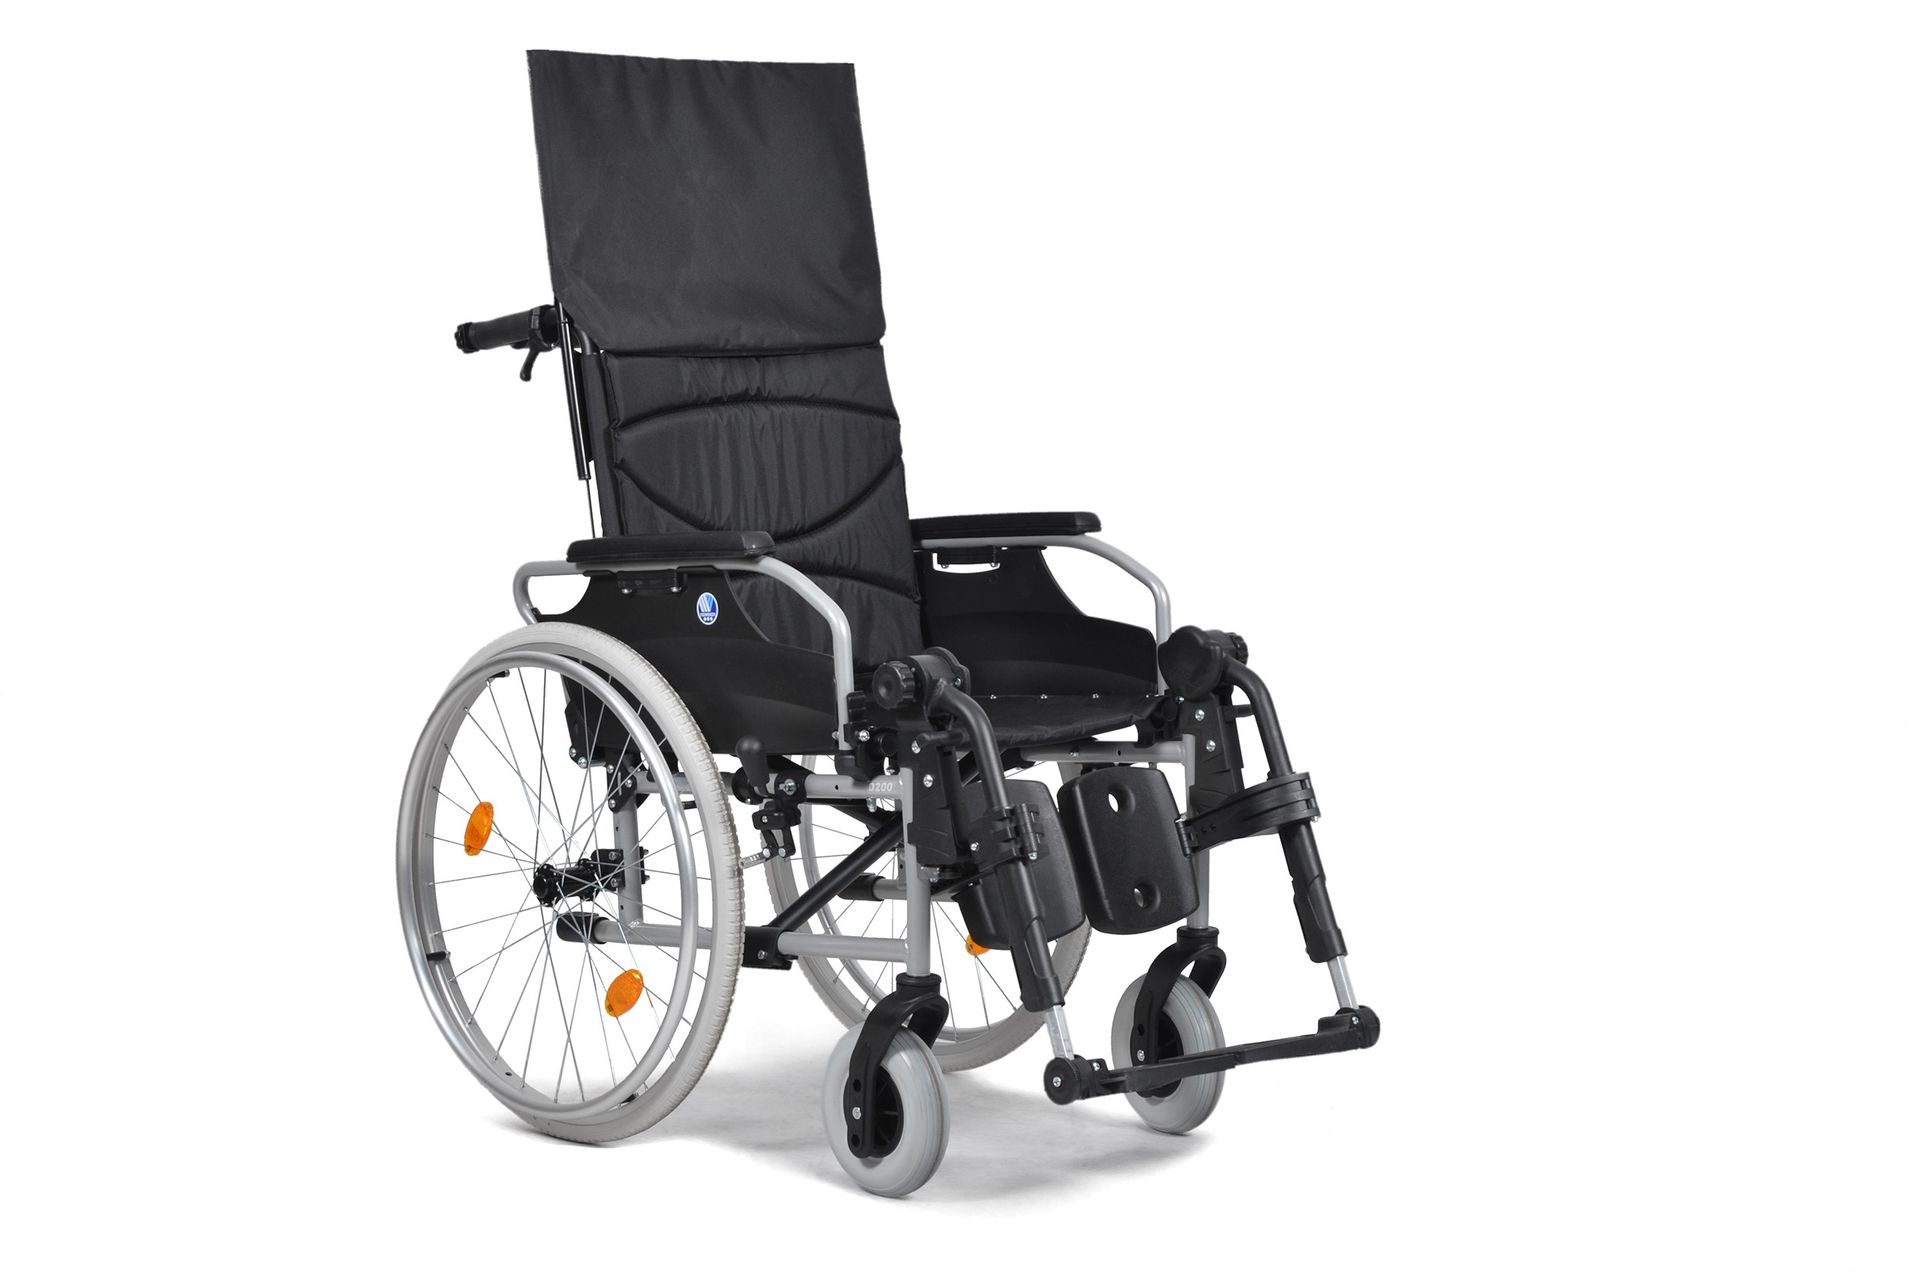 Wózek inwalidzki specjalny D200 30° ze stabilizacją głowy i pleców z odchylanym oparciem Vermeiren : szer. siedz. wózka inw. - 44 cm